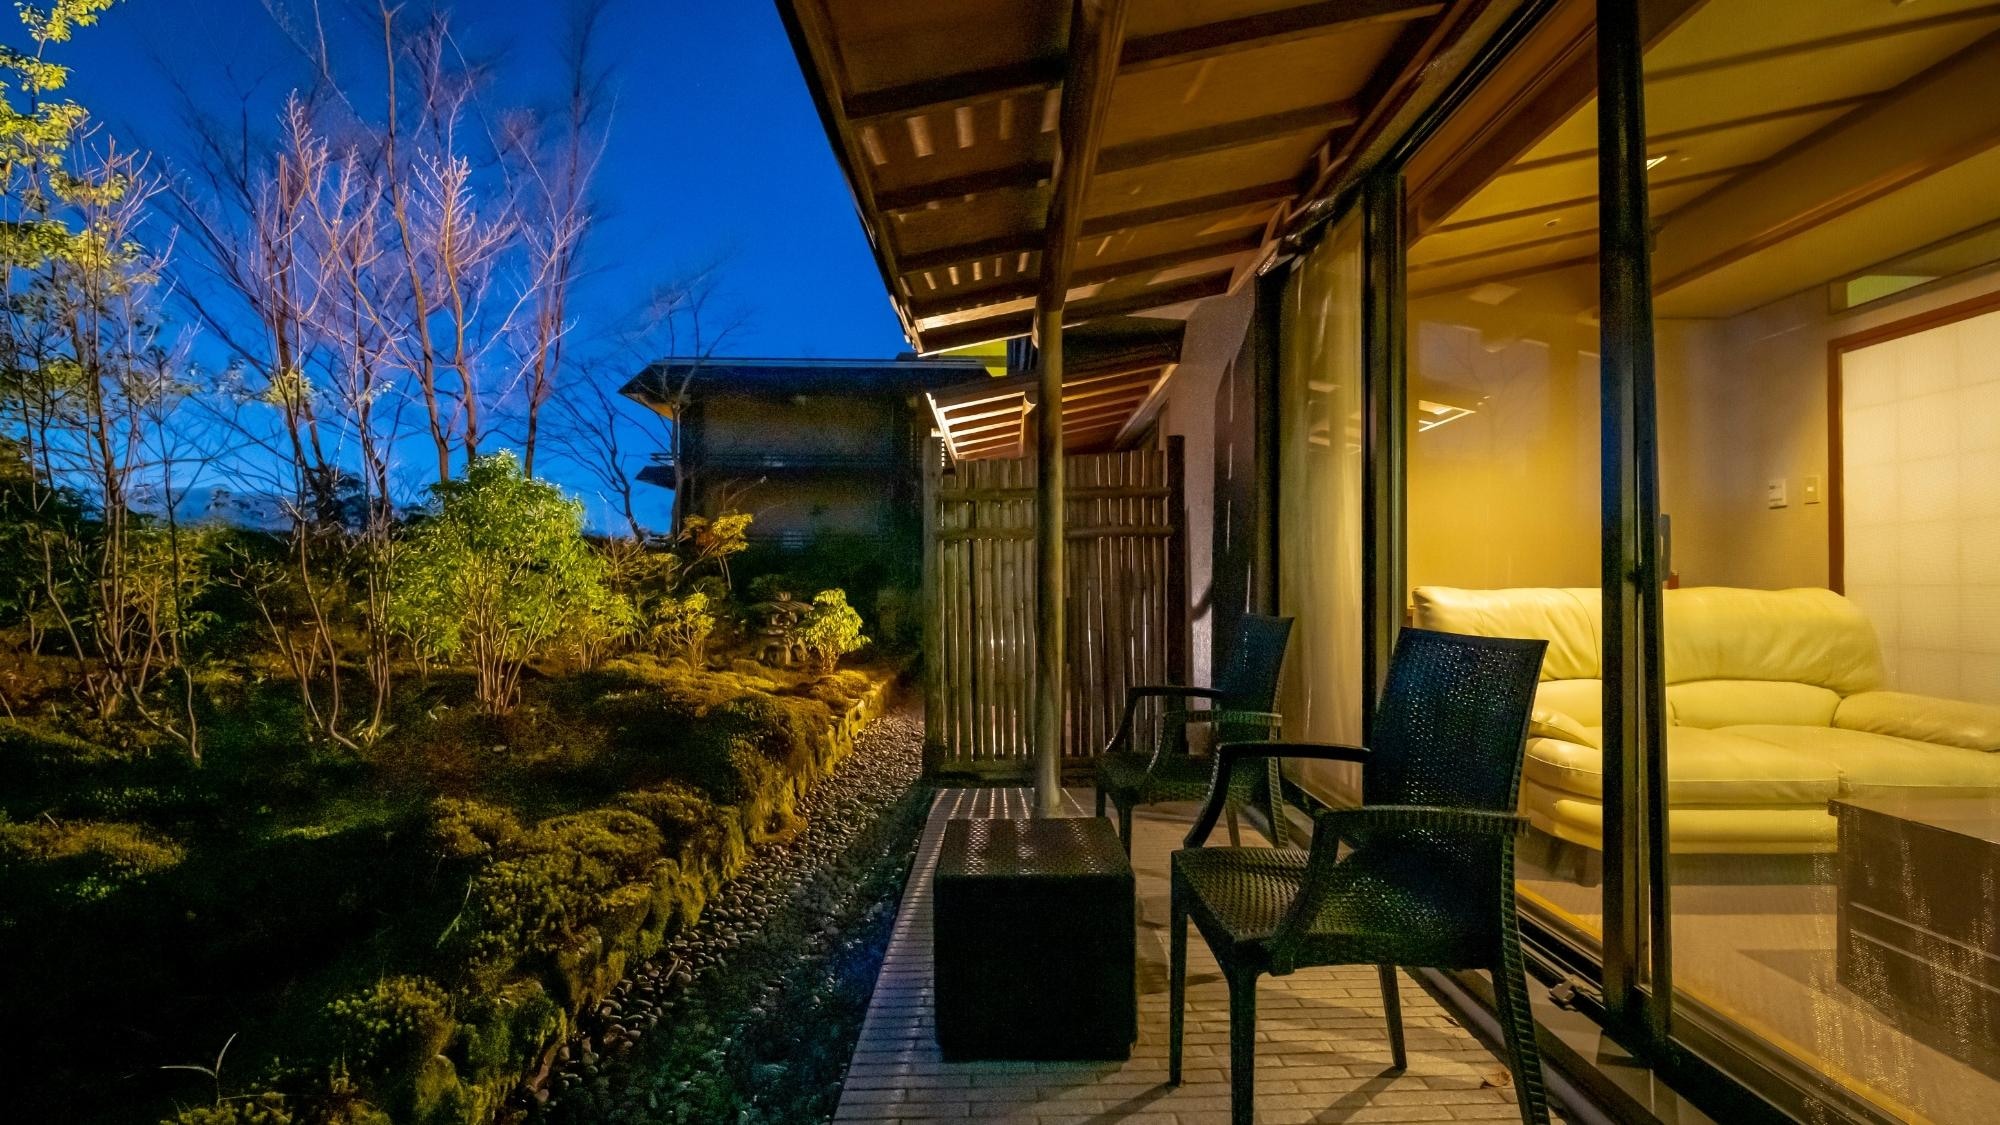 Guest room with terrace garden in Senjukan.